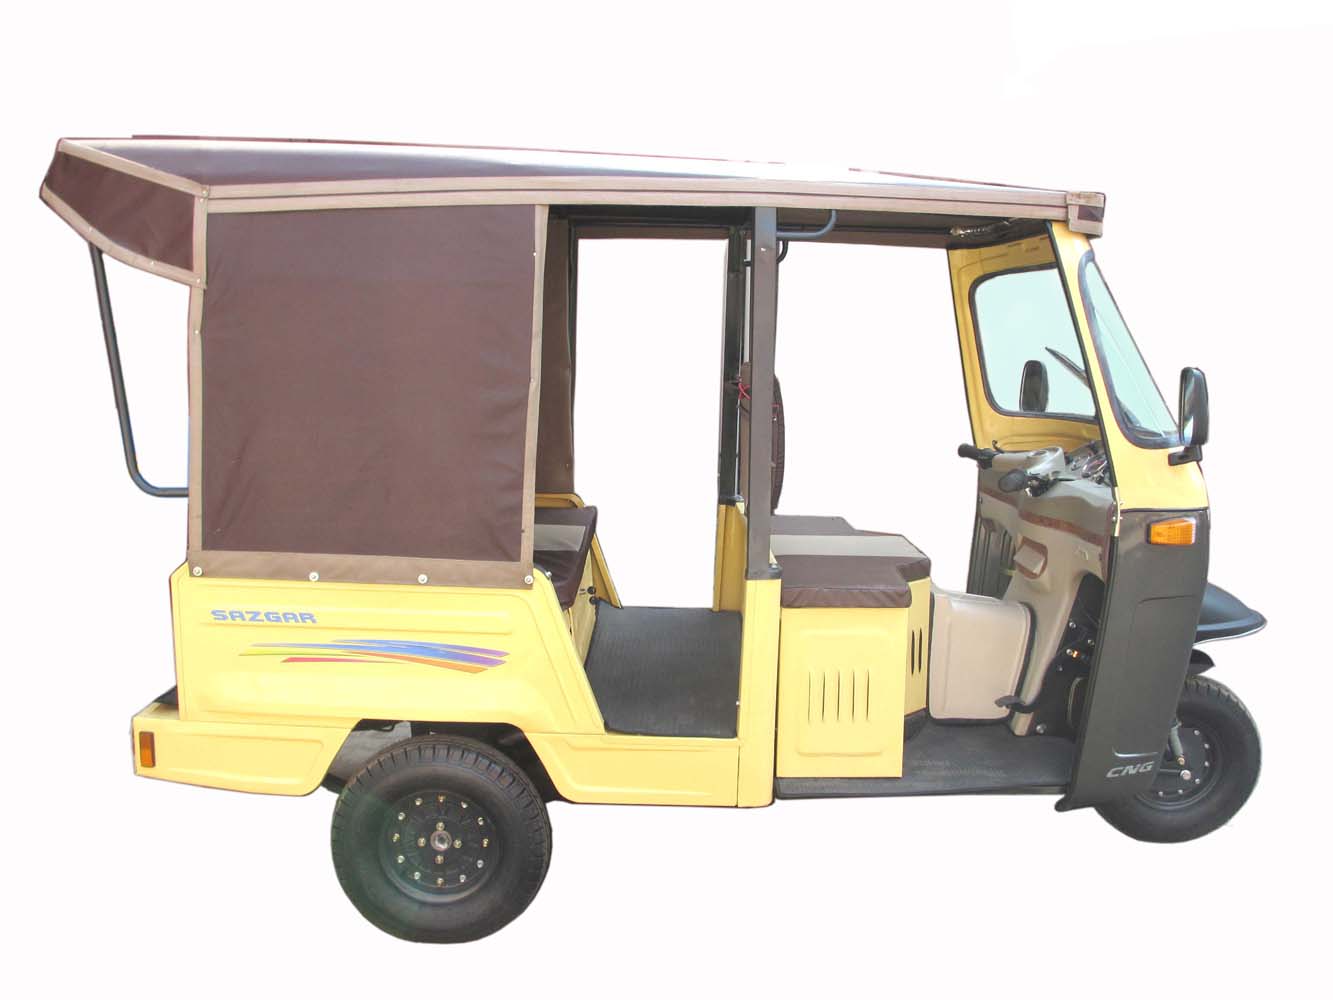 Sazgar Rickshaw Price in Pakistan 2022